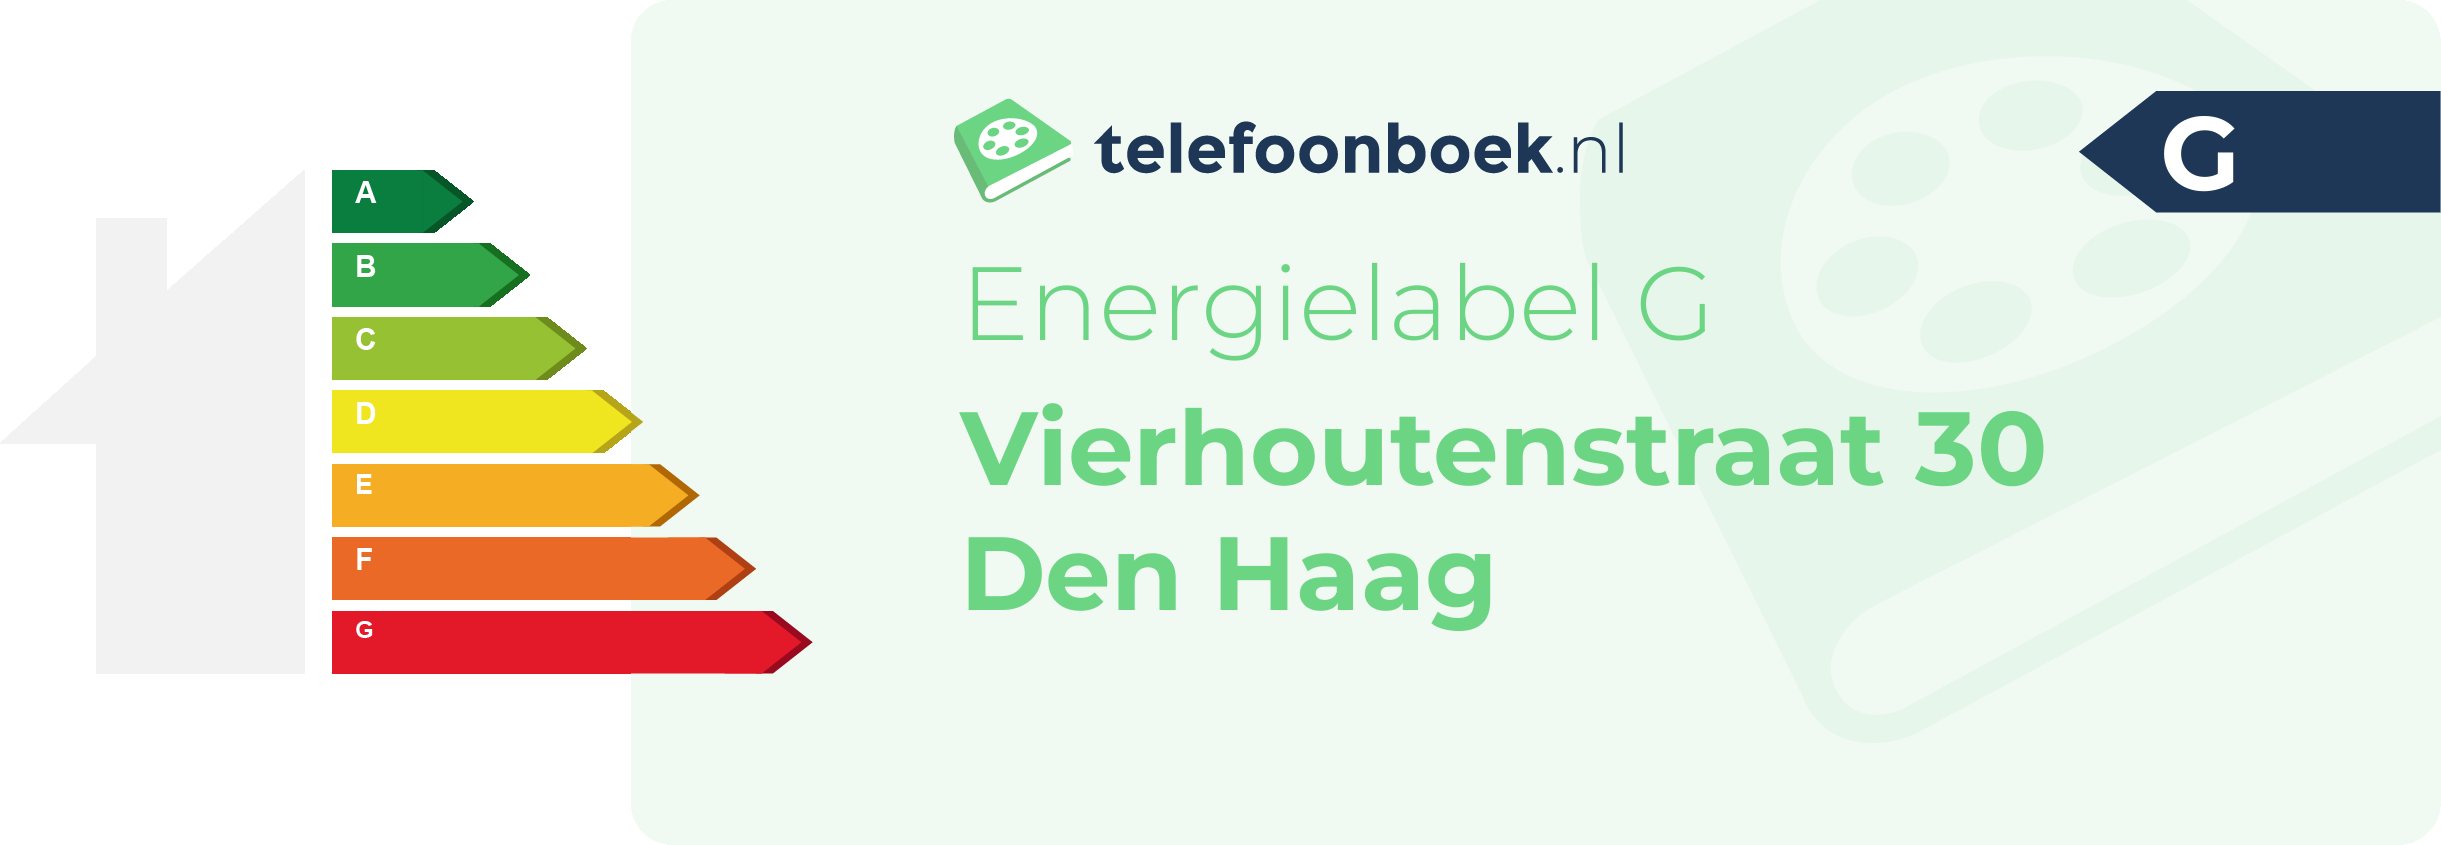 Energielabel Vierhoutenstraat 30 Den Haag